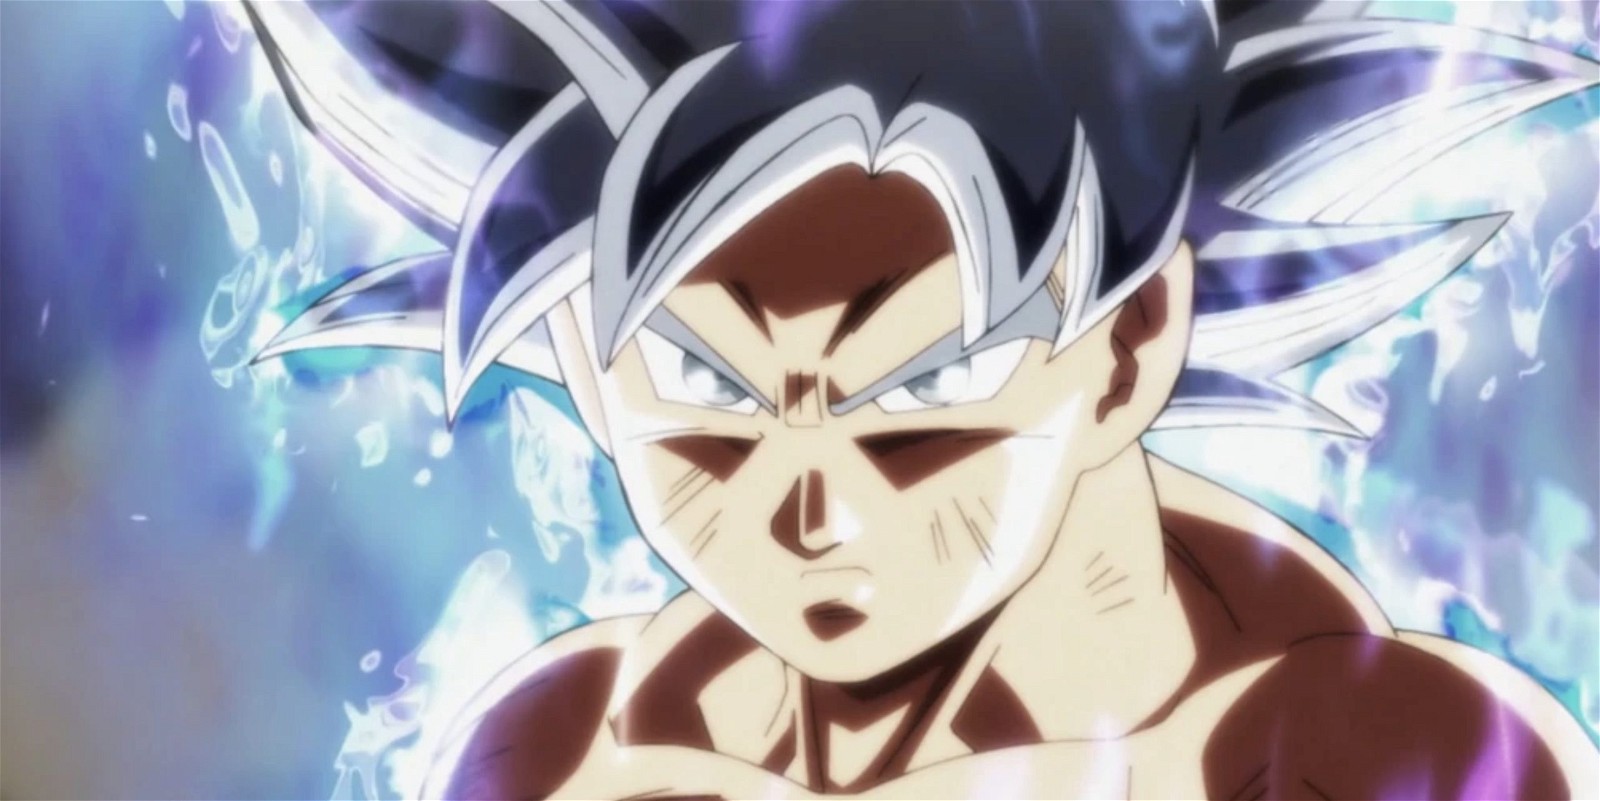 Akira Toriyama - Goku in Dragon Ball